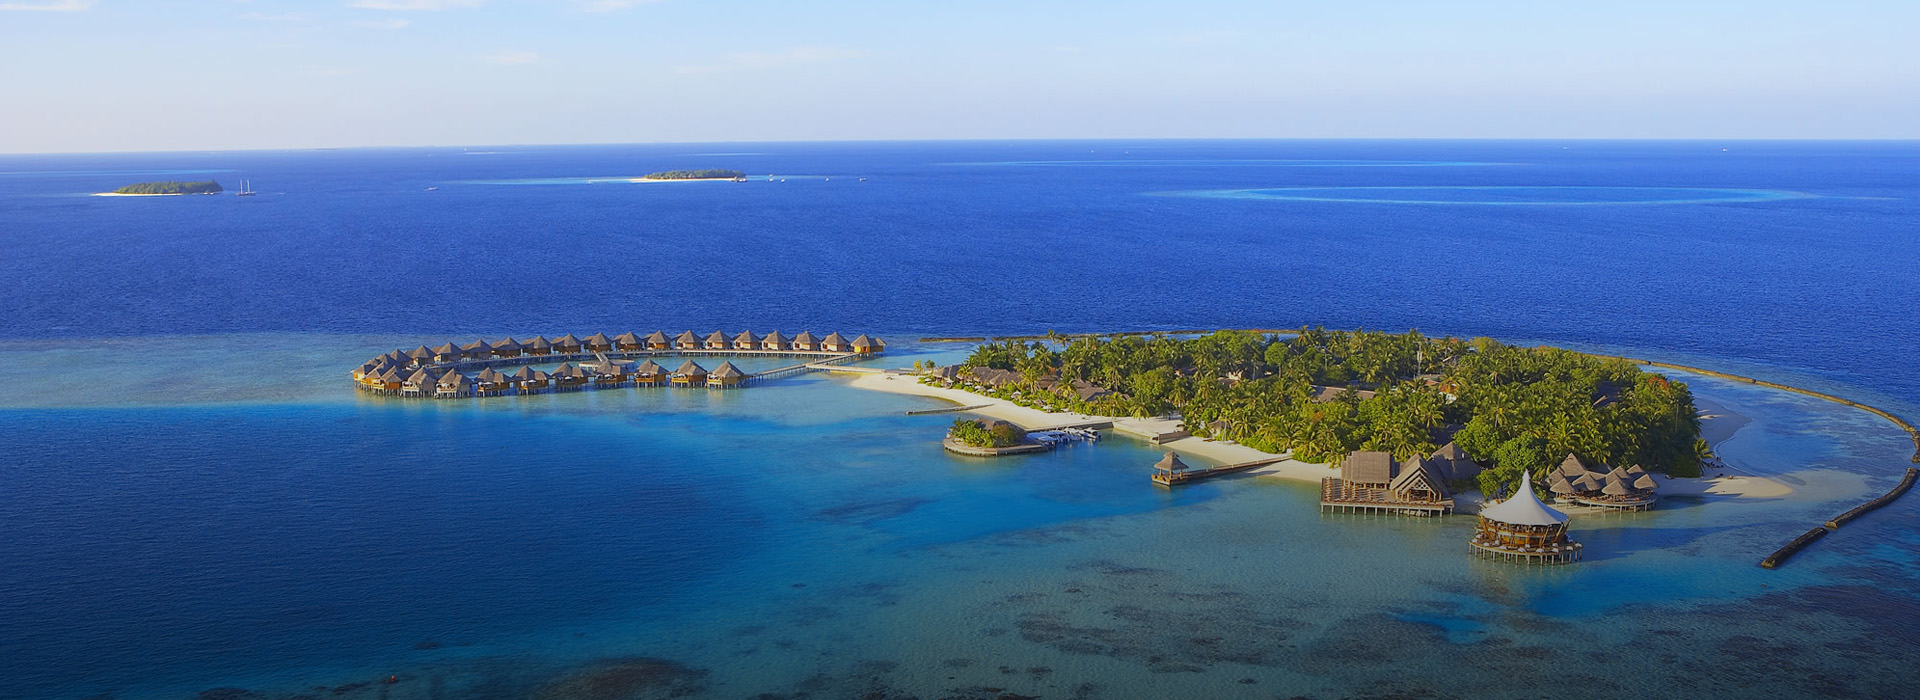 Maldives vacation package to Baros Maldives